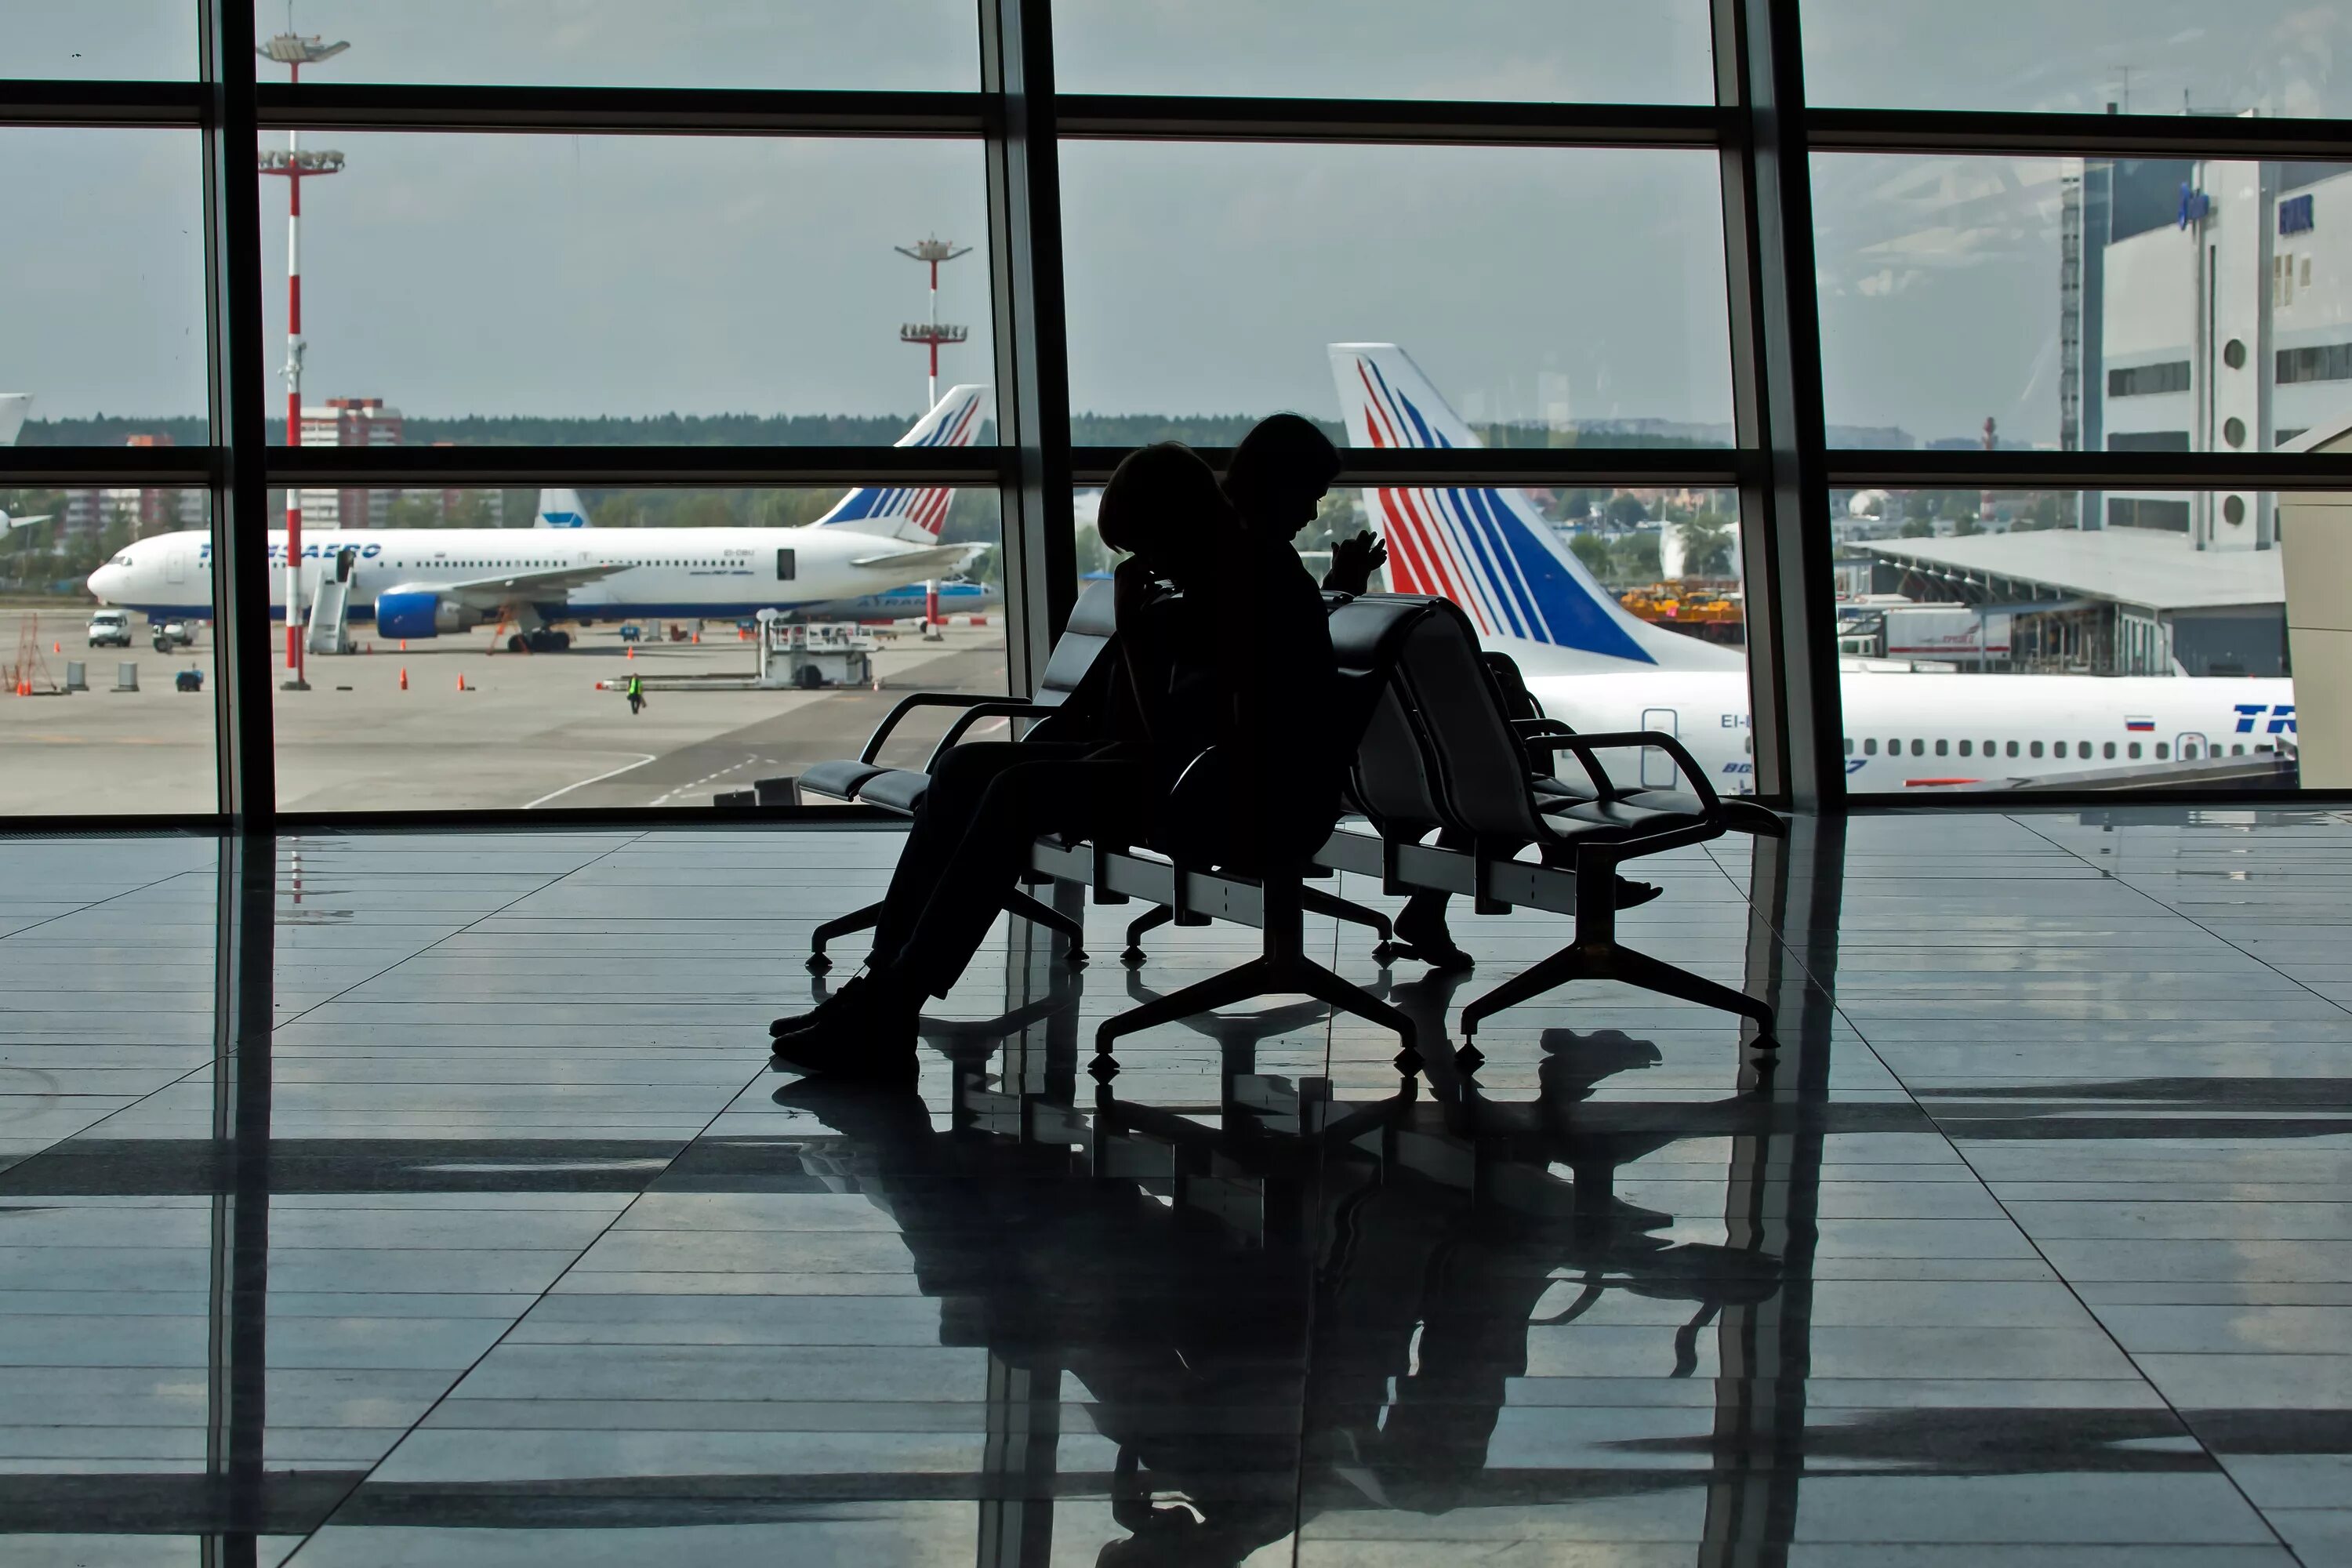 Аэропорт Внуково зал ожидания. Самолет и аэропорт. Окно аэропорта. Ожидание самолета в аэропорту.